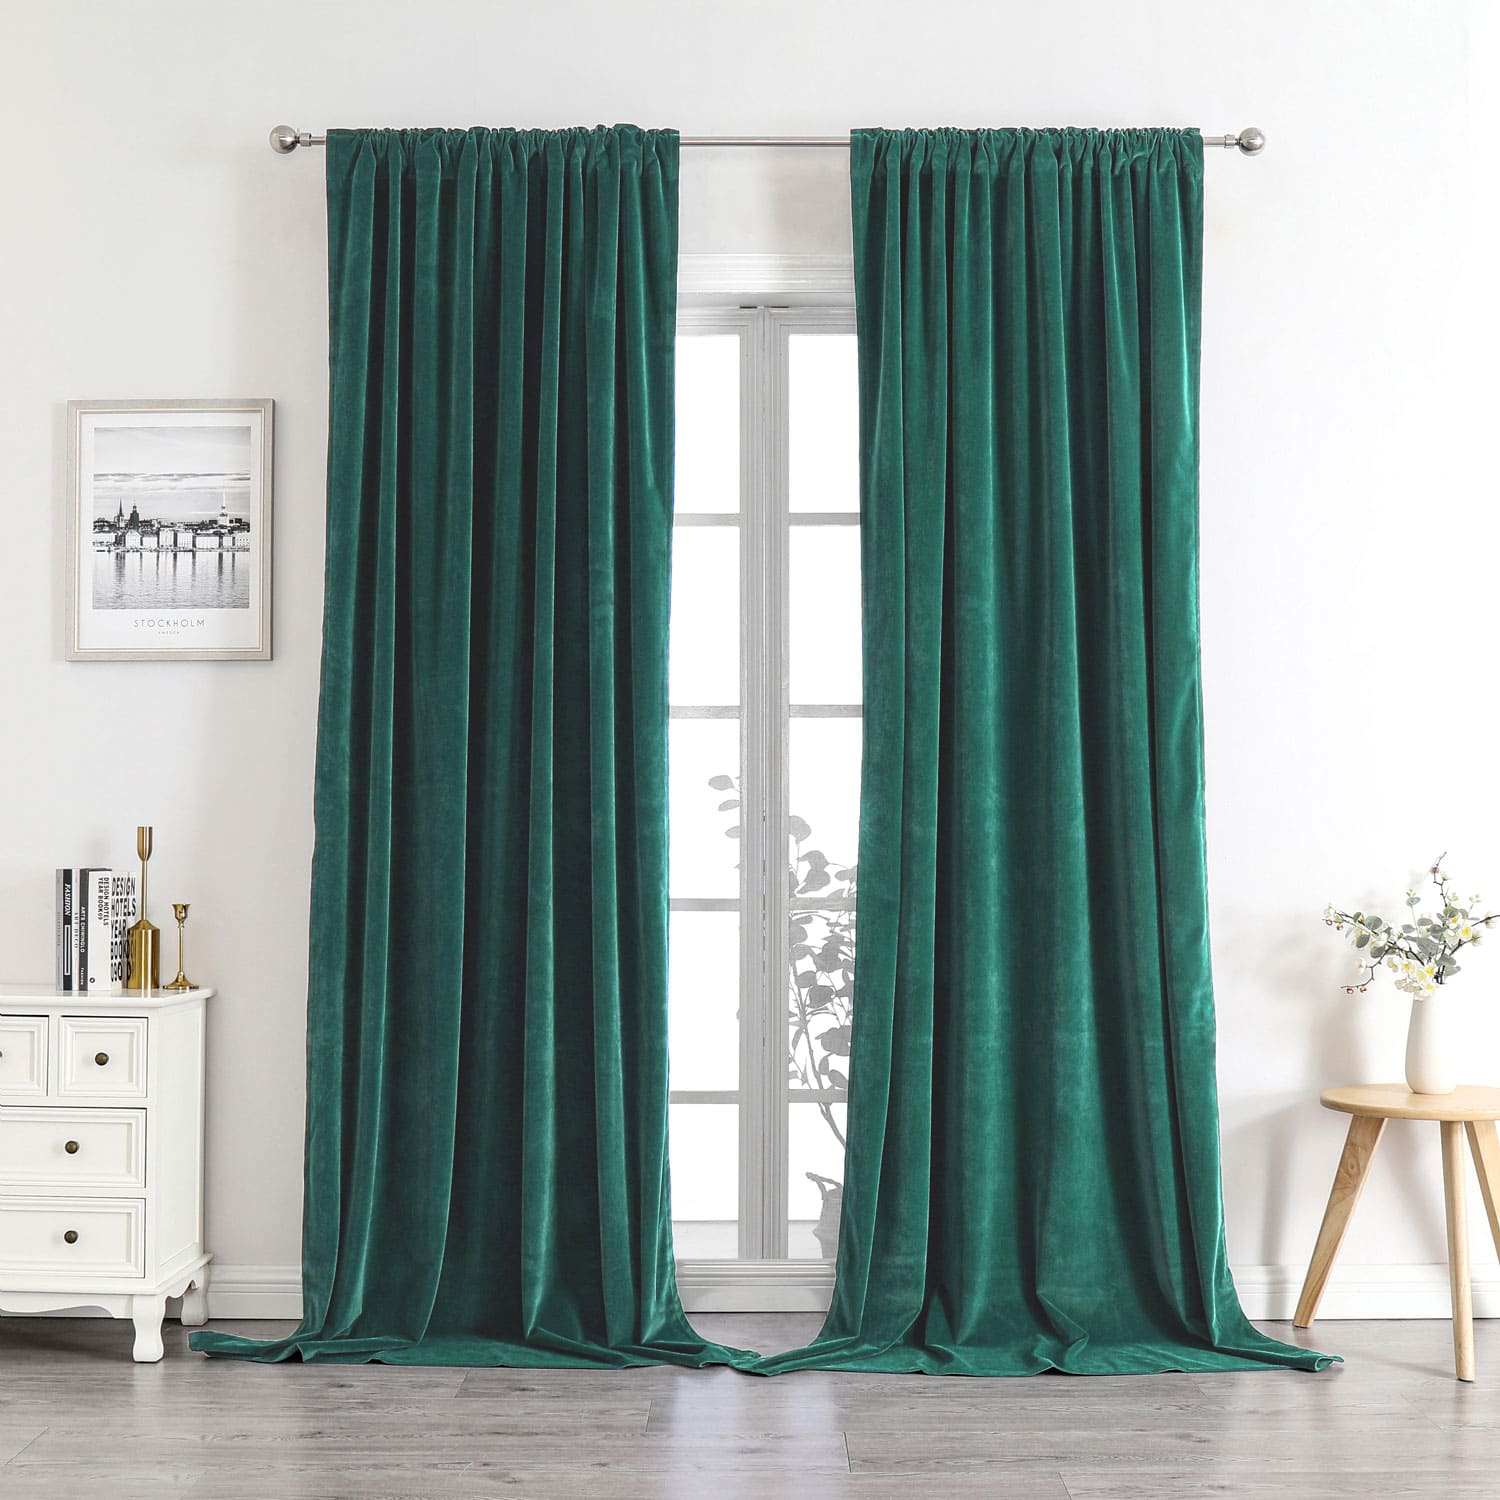 Rideau Occultant Vert – My curtaina